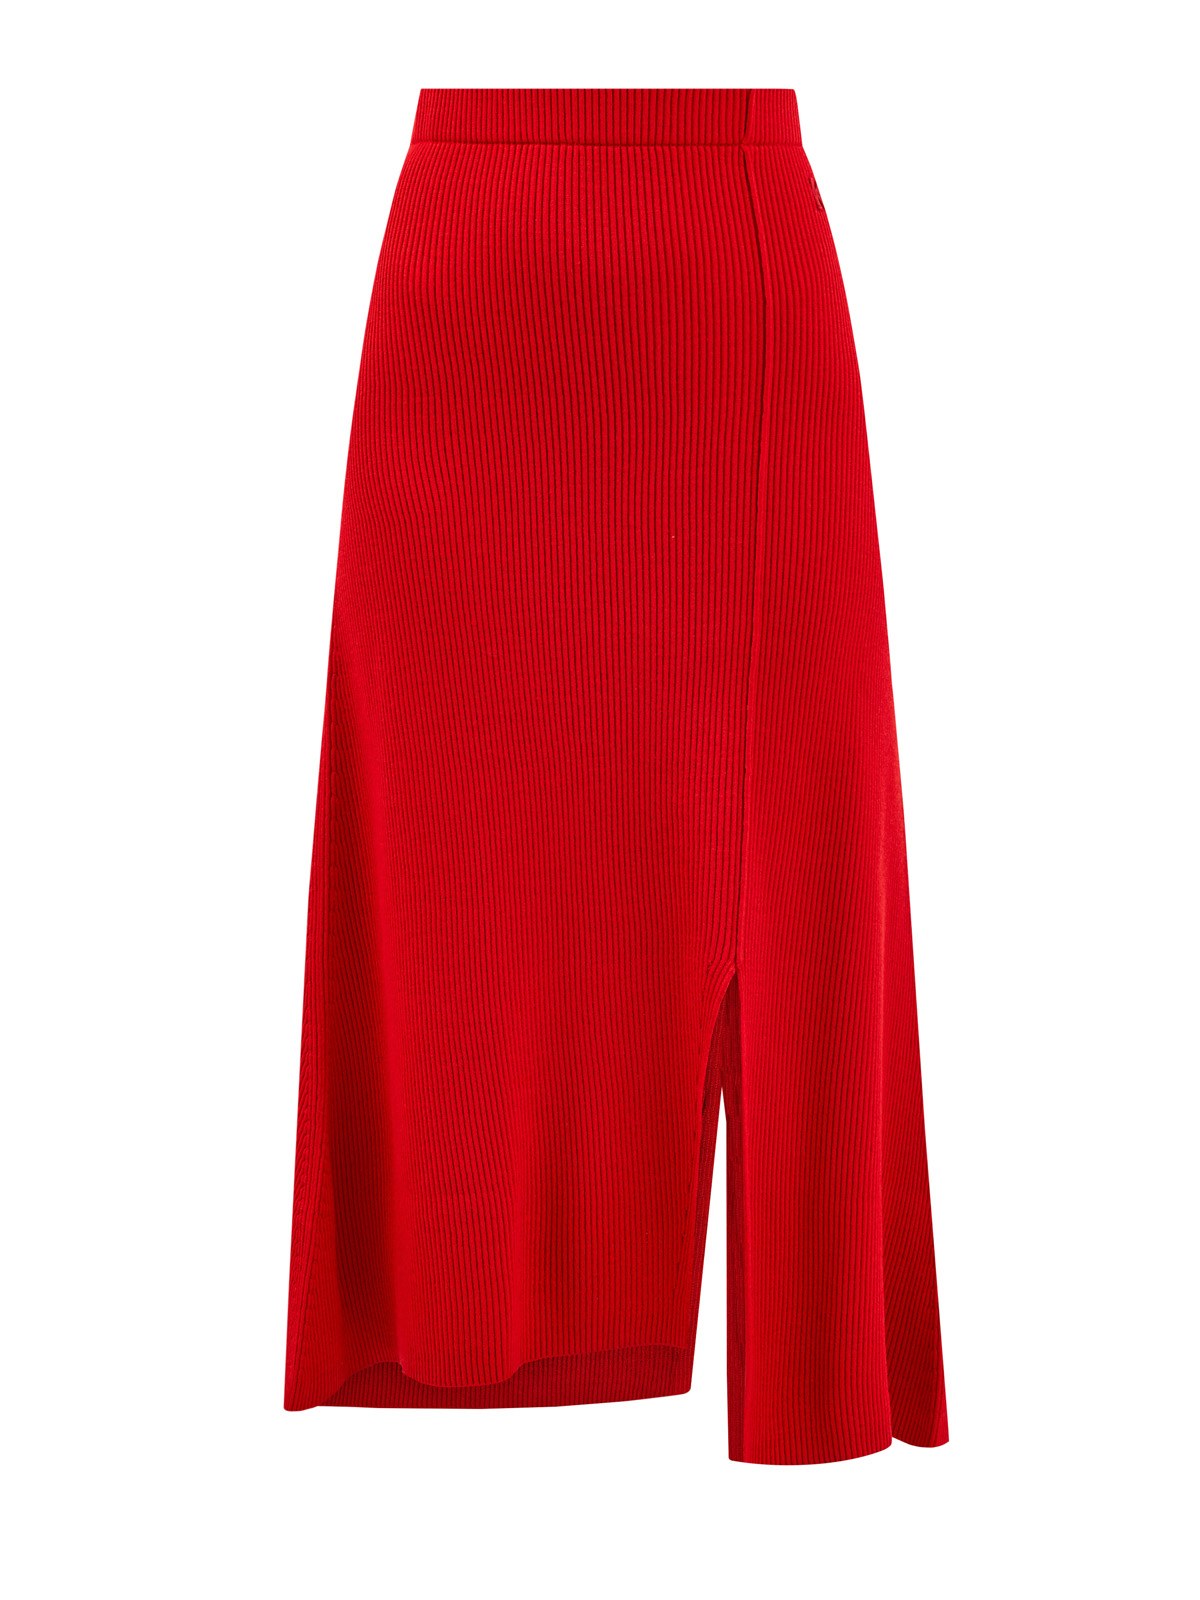 Яркая юбка-миди из пряжи в тонкий рубчик KENZO, цвет красный, размер S;M - фото 1